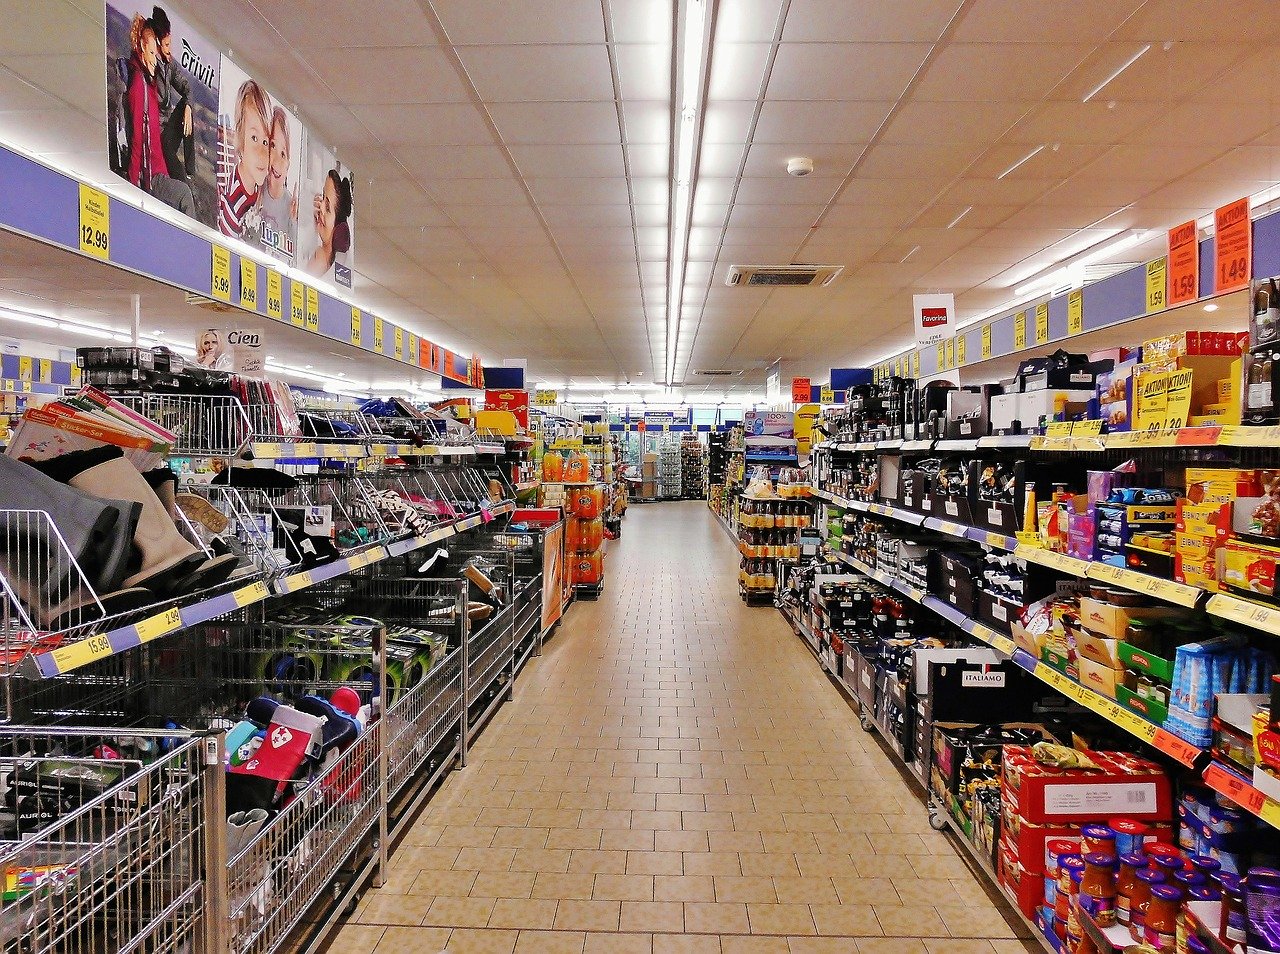 Regale im Supermarkt||Marks and Spencer Laden